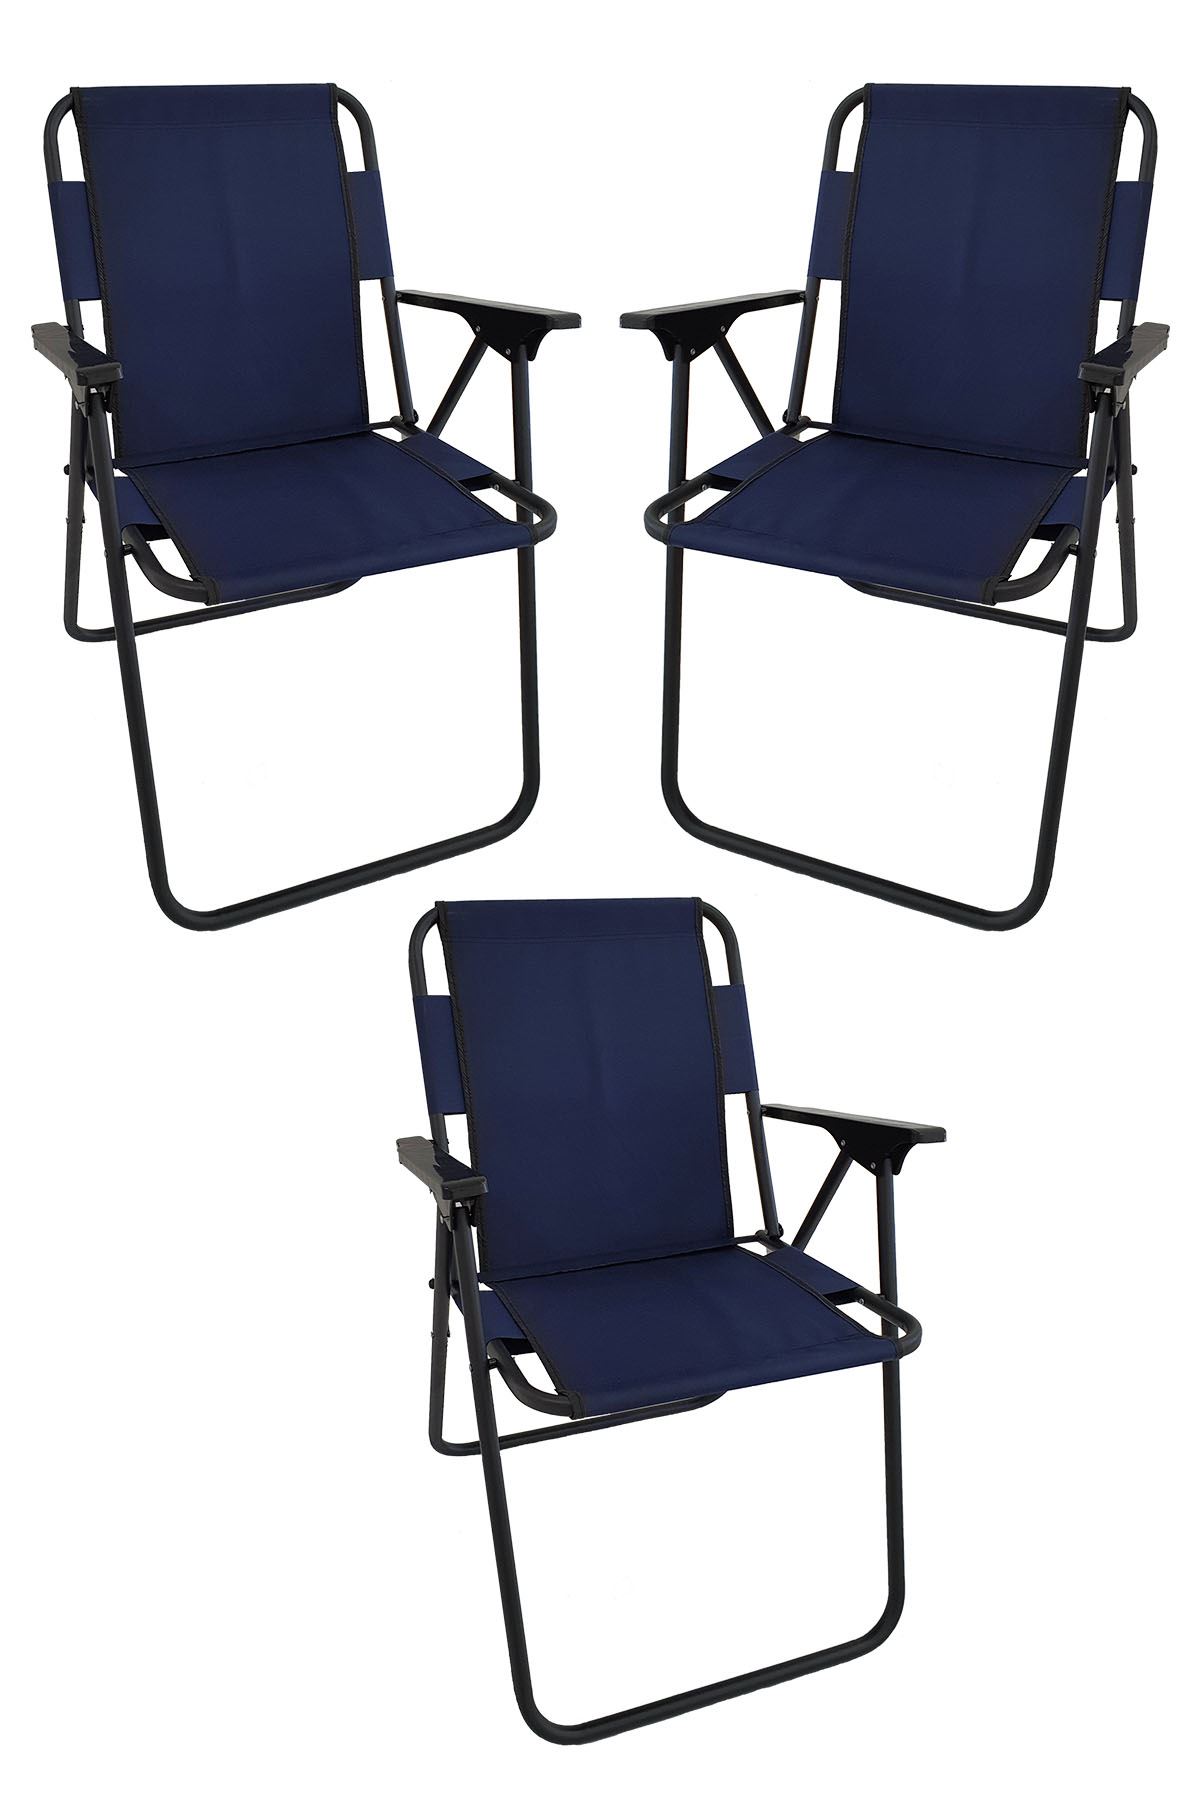 Bofigo 3 Pcs Camping Chair Folding Chair Picnic Chair Beach Chair Navy Blue